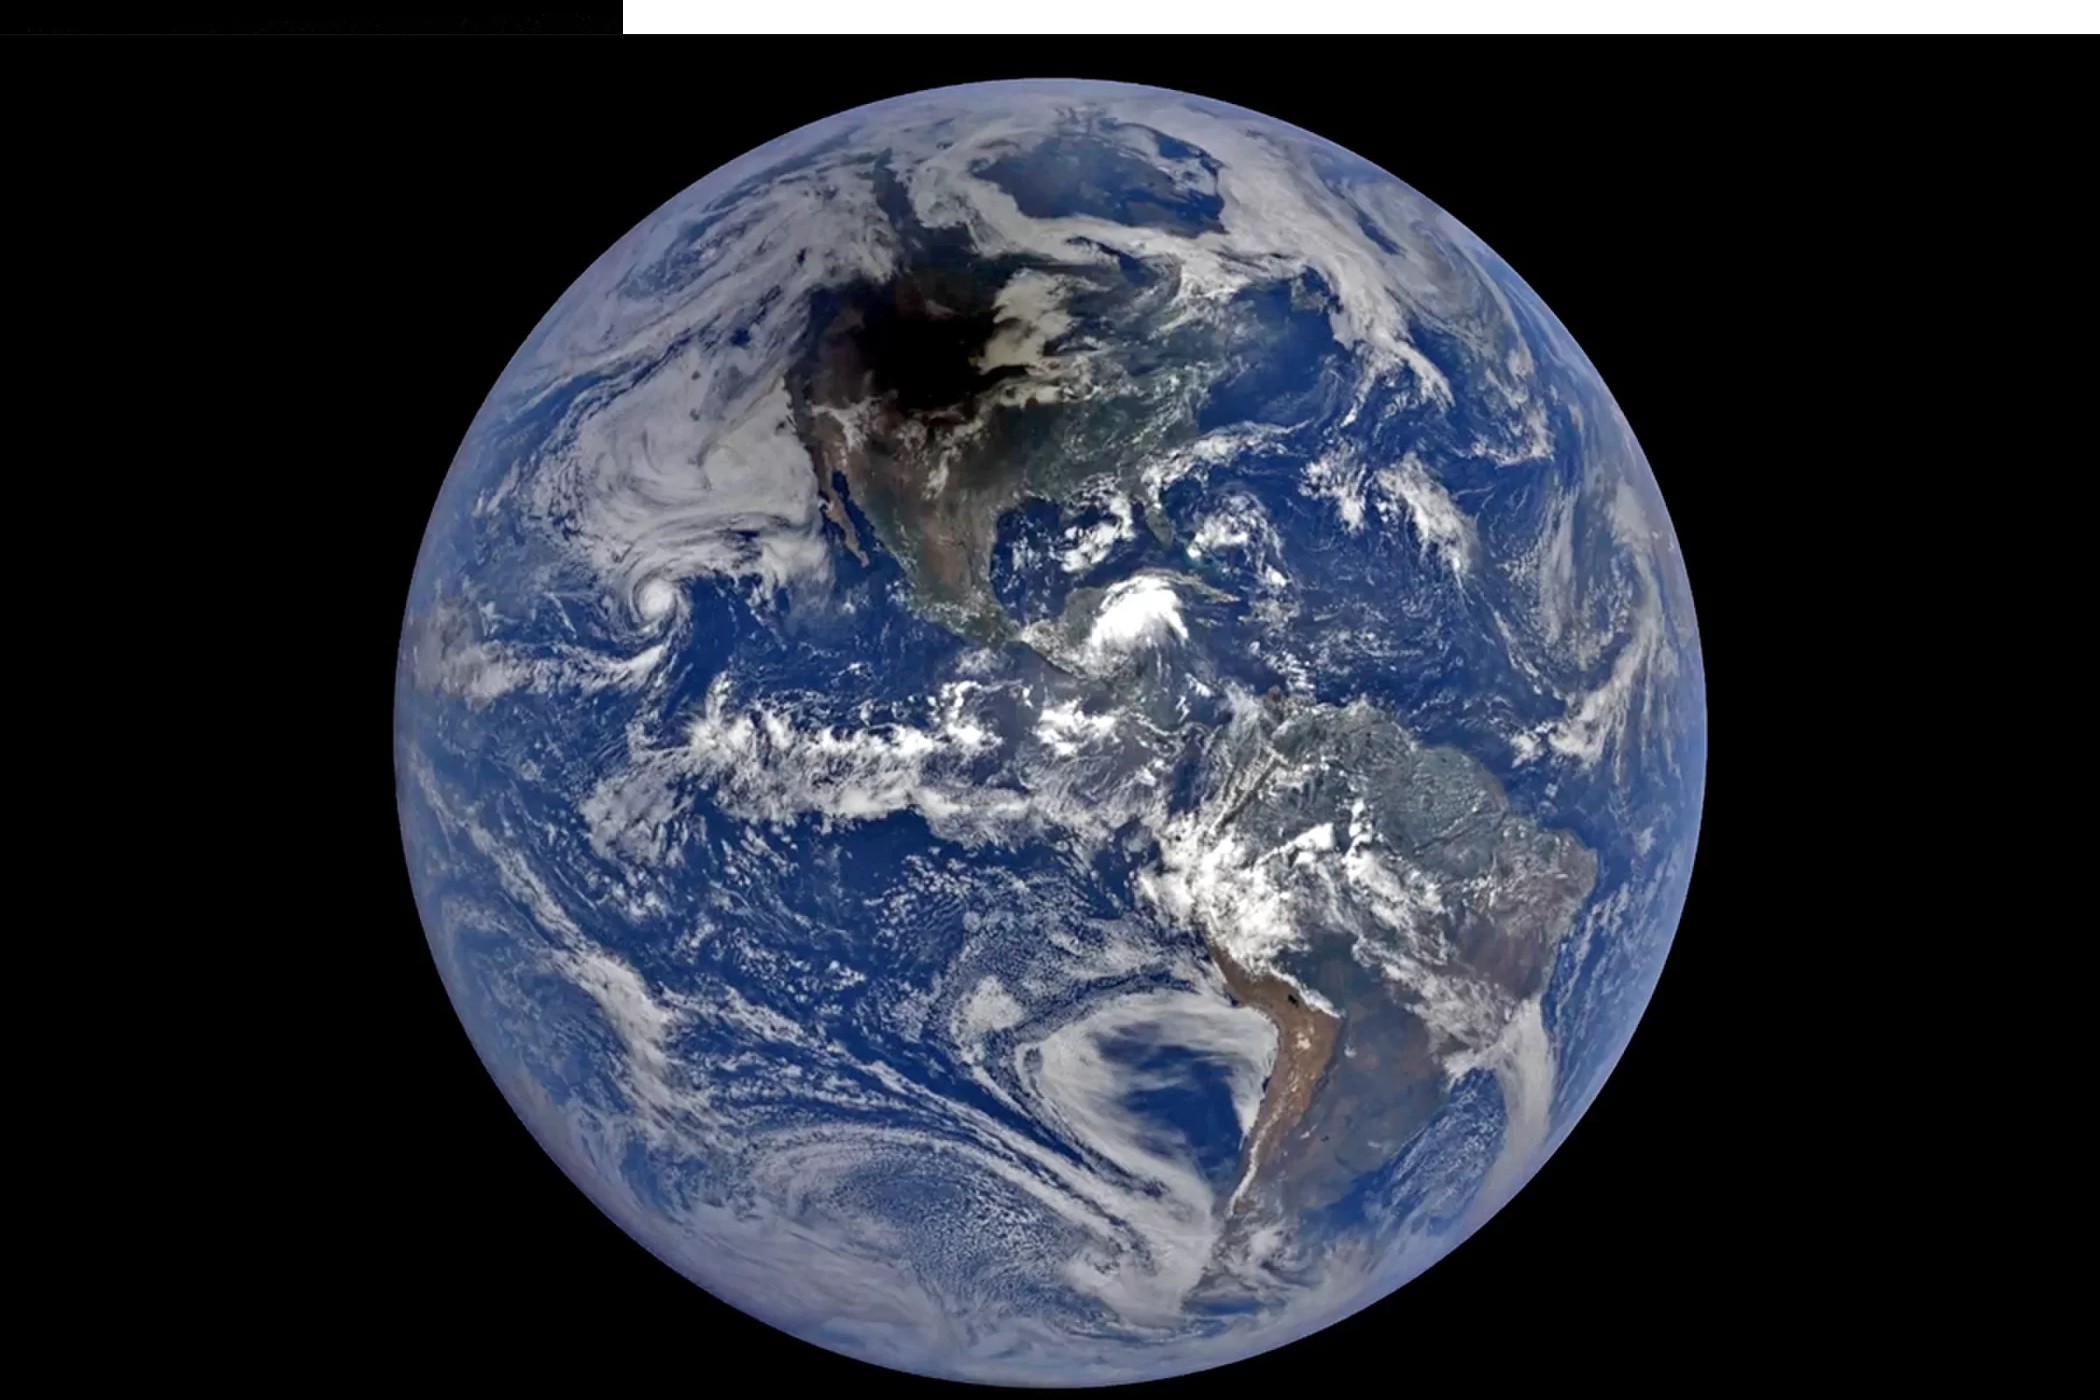 Daleko w kosmosie, należąca do NASA Earth Polychromatic Imaging Camera wysłała 12 EPICkich zdjęć cienia Księżyca sunącego po obszarze Ameryki Północnej w naturalnych barwach.